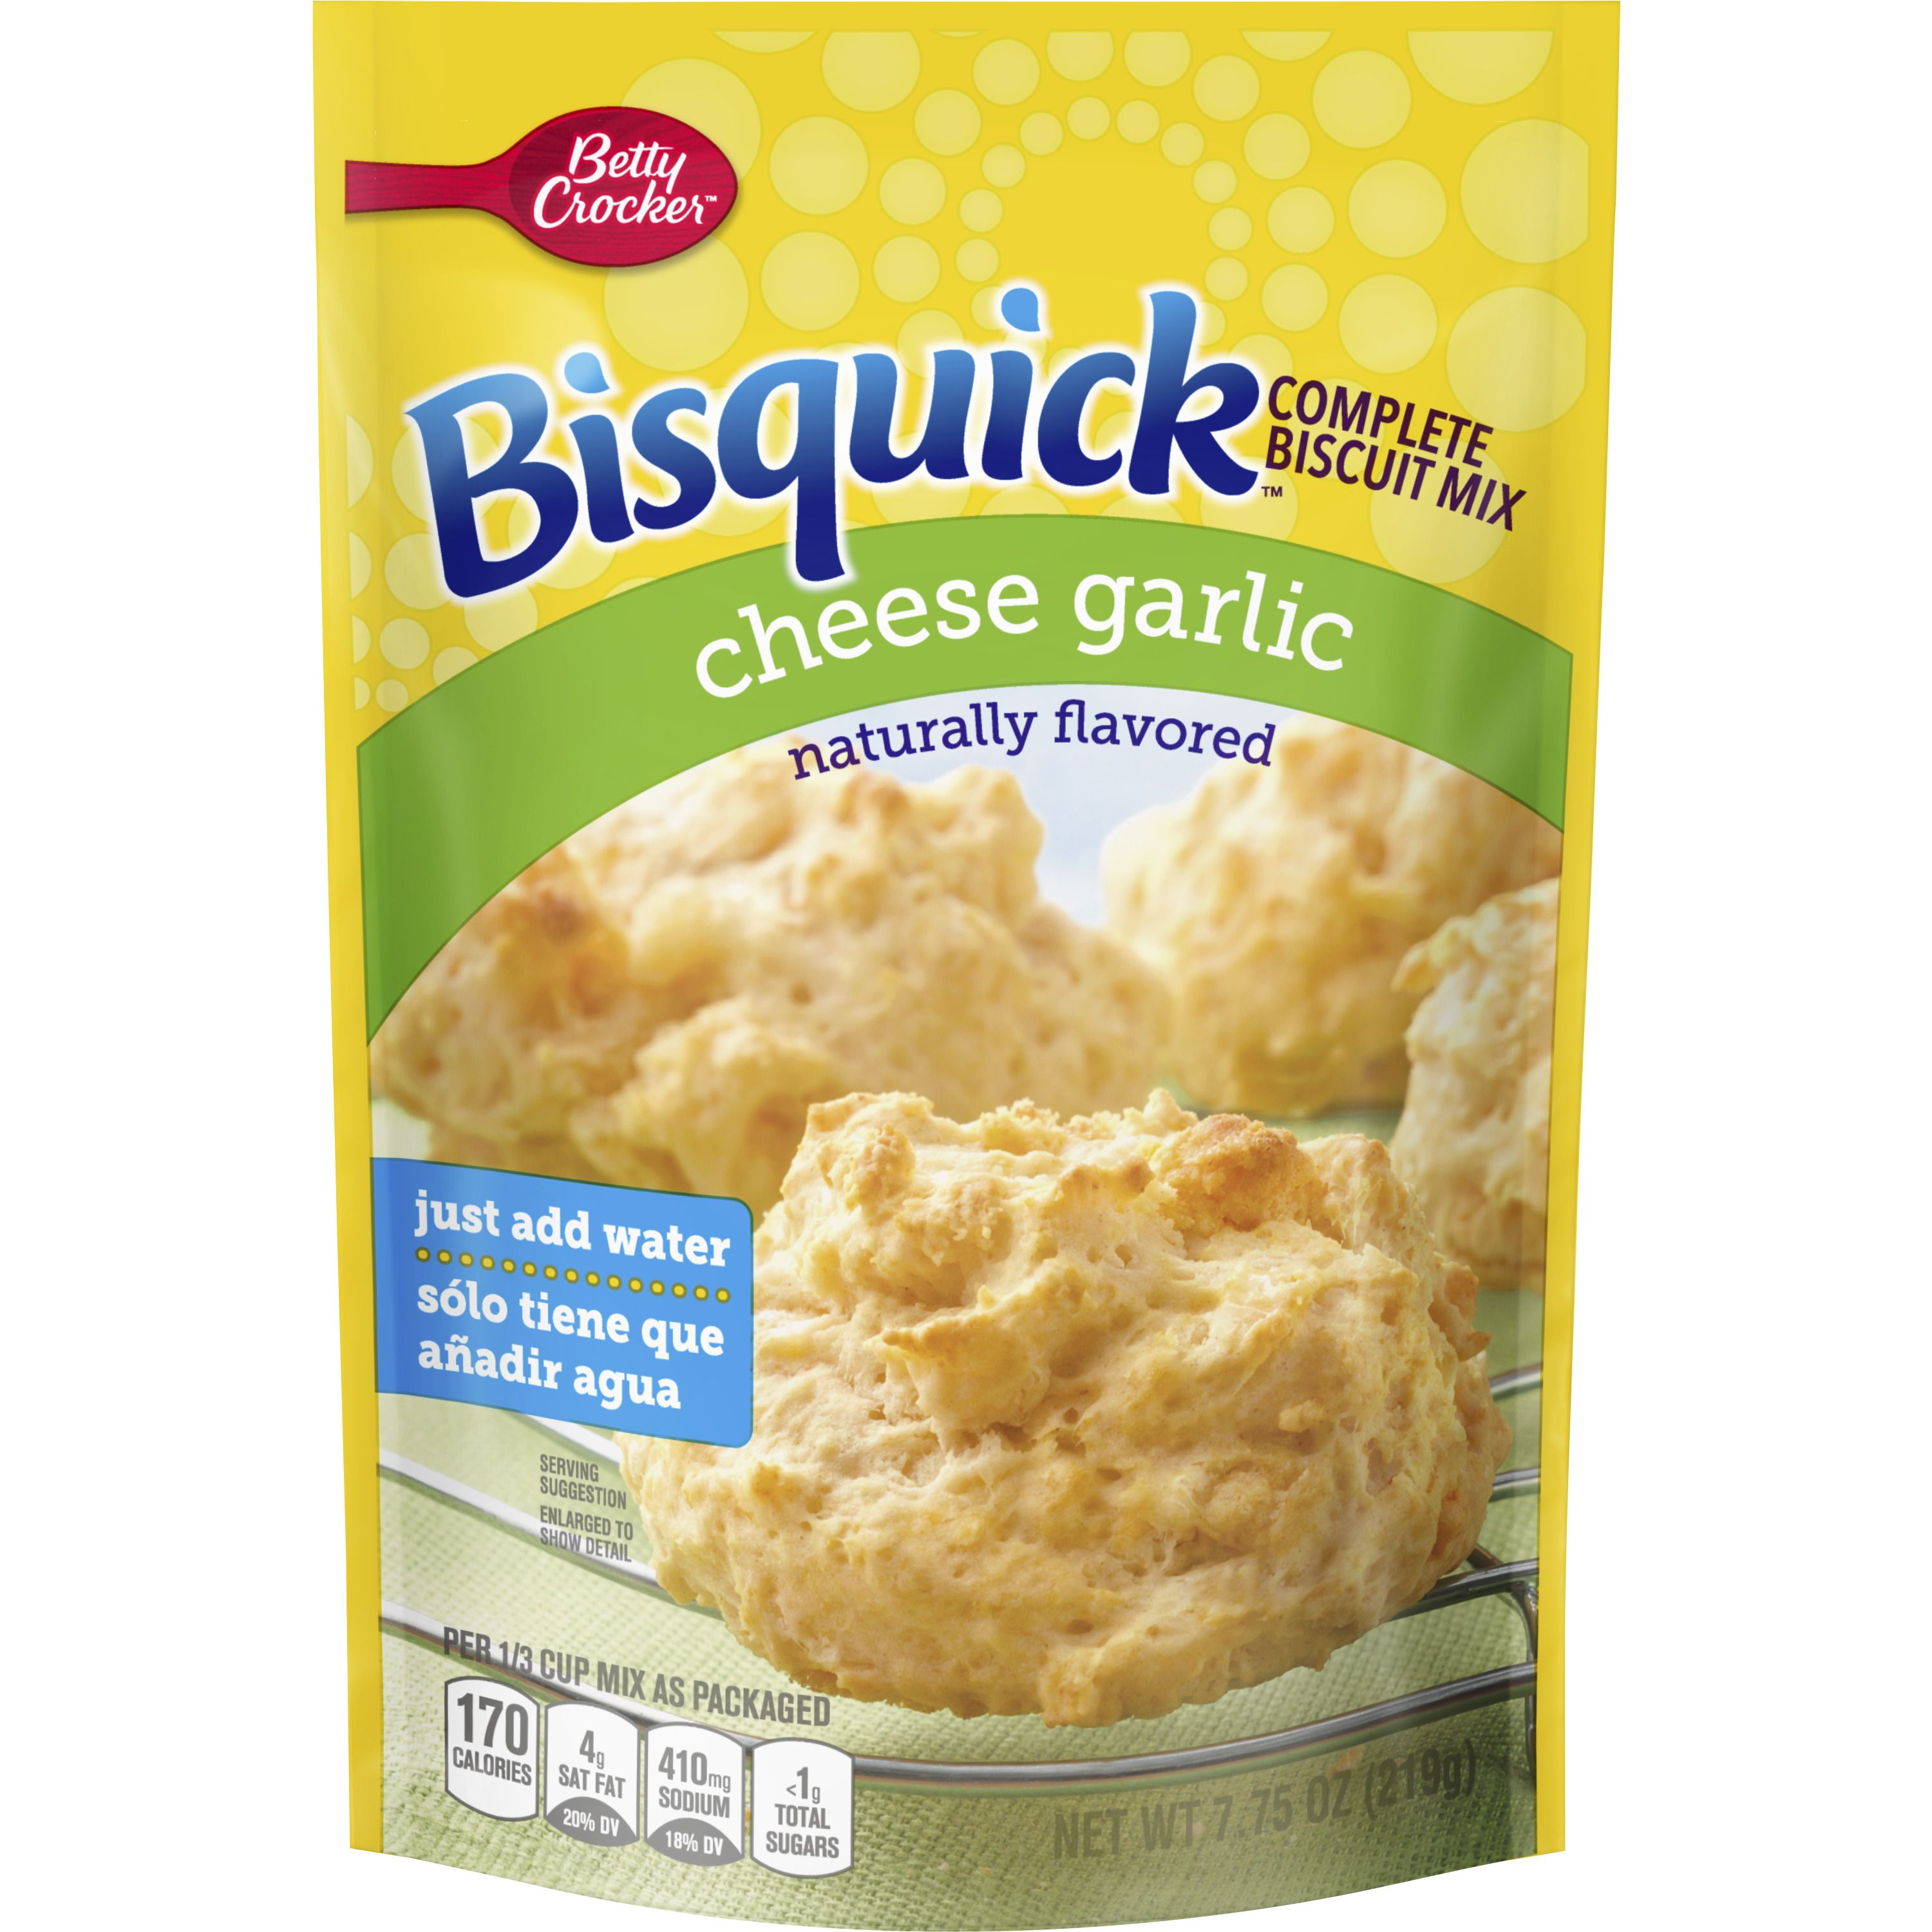 Bisquick™ Complete Cheese Garlic Biscuit Mix - Front